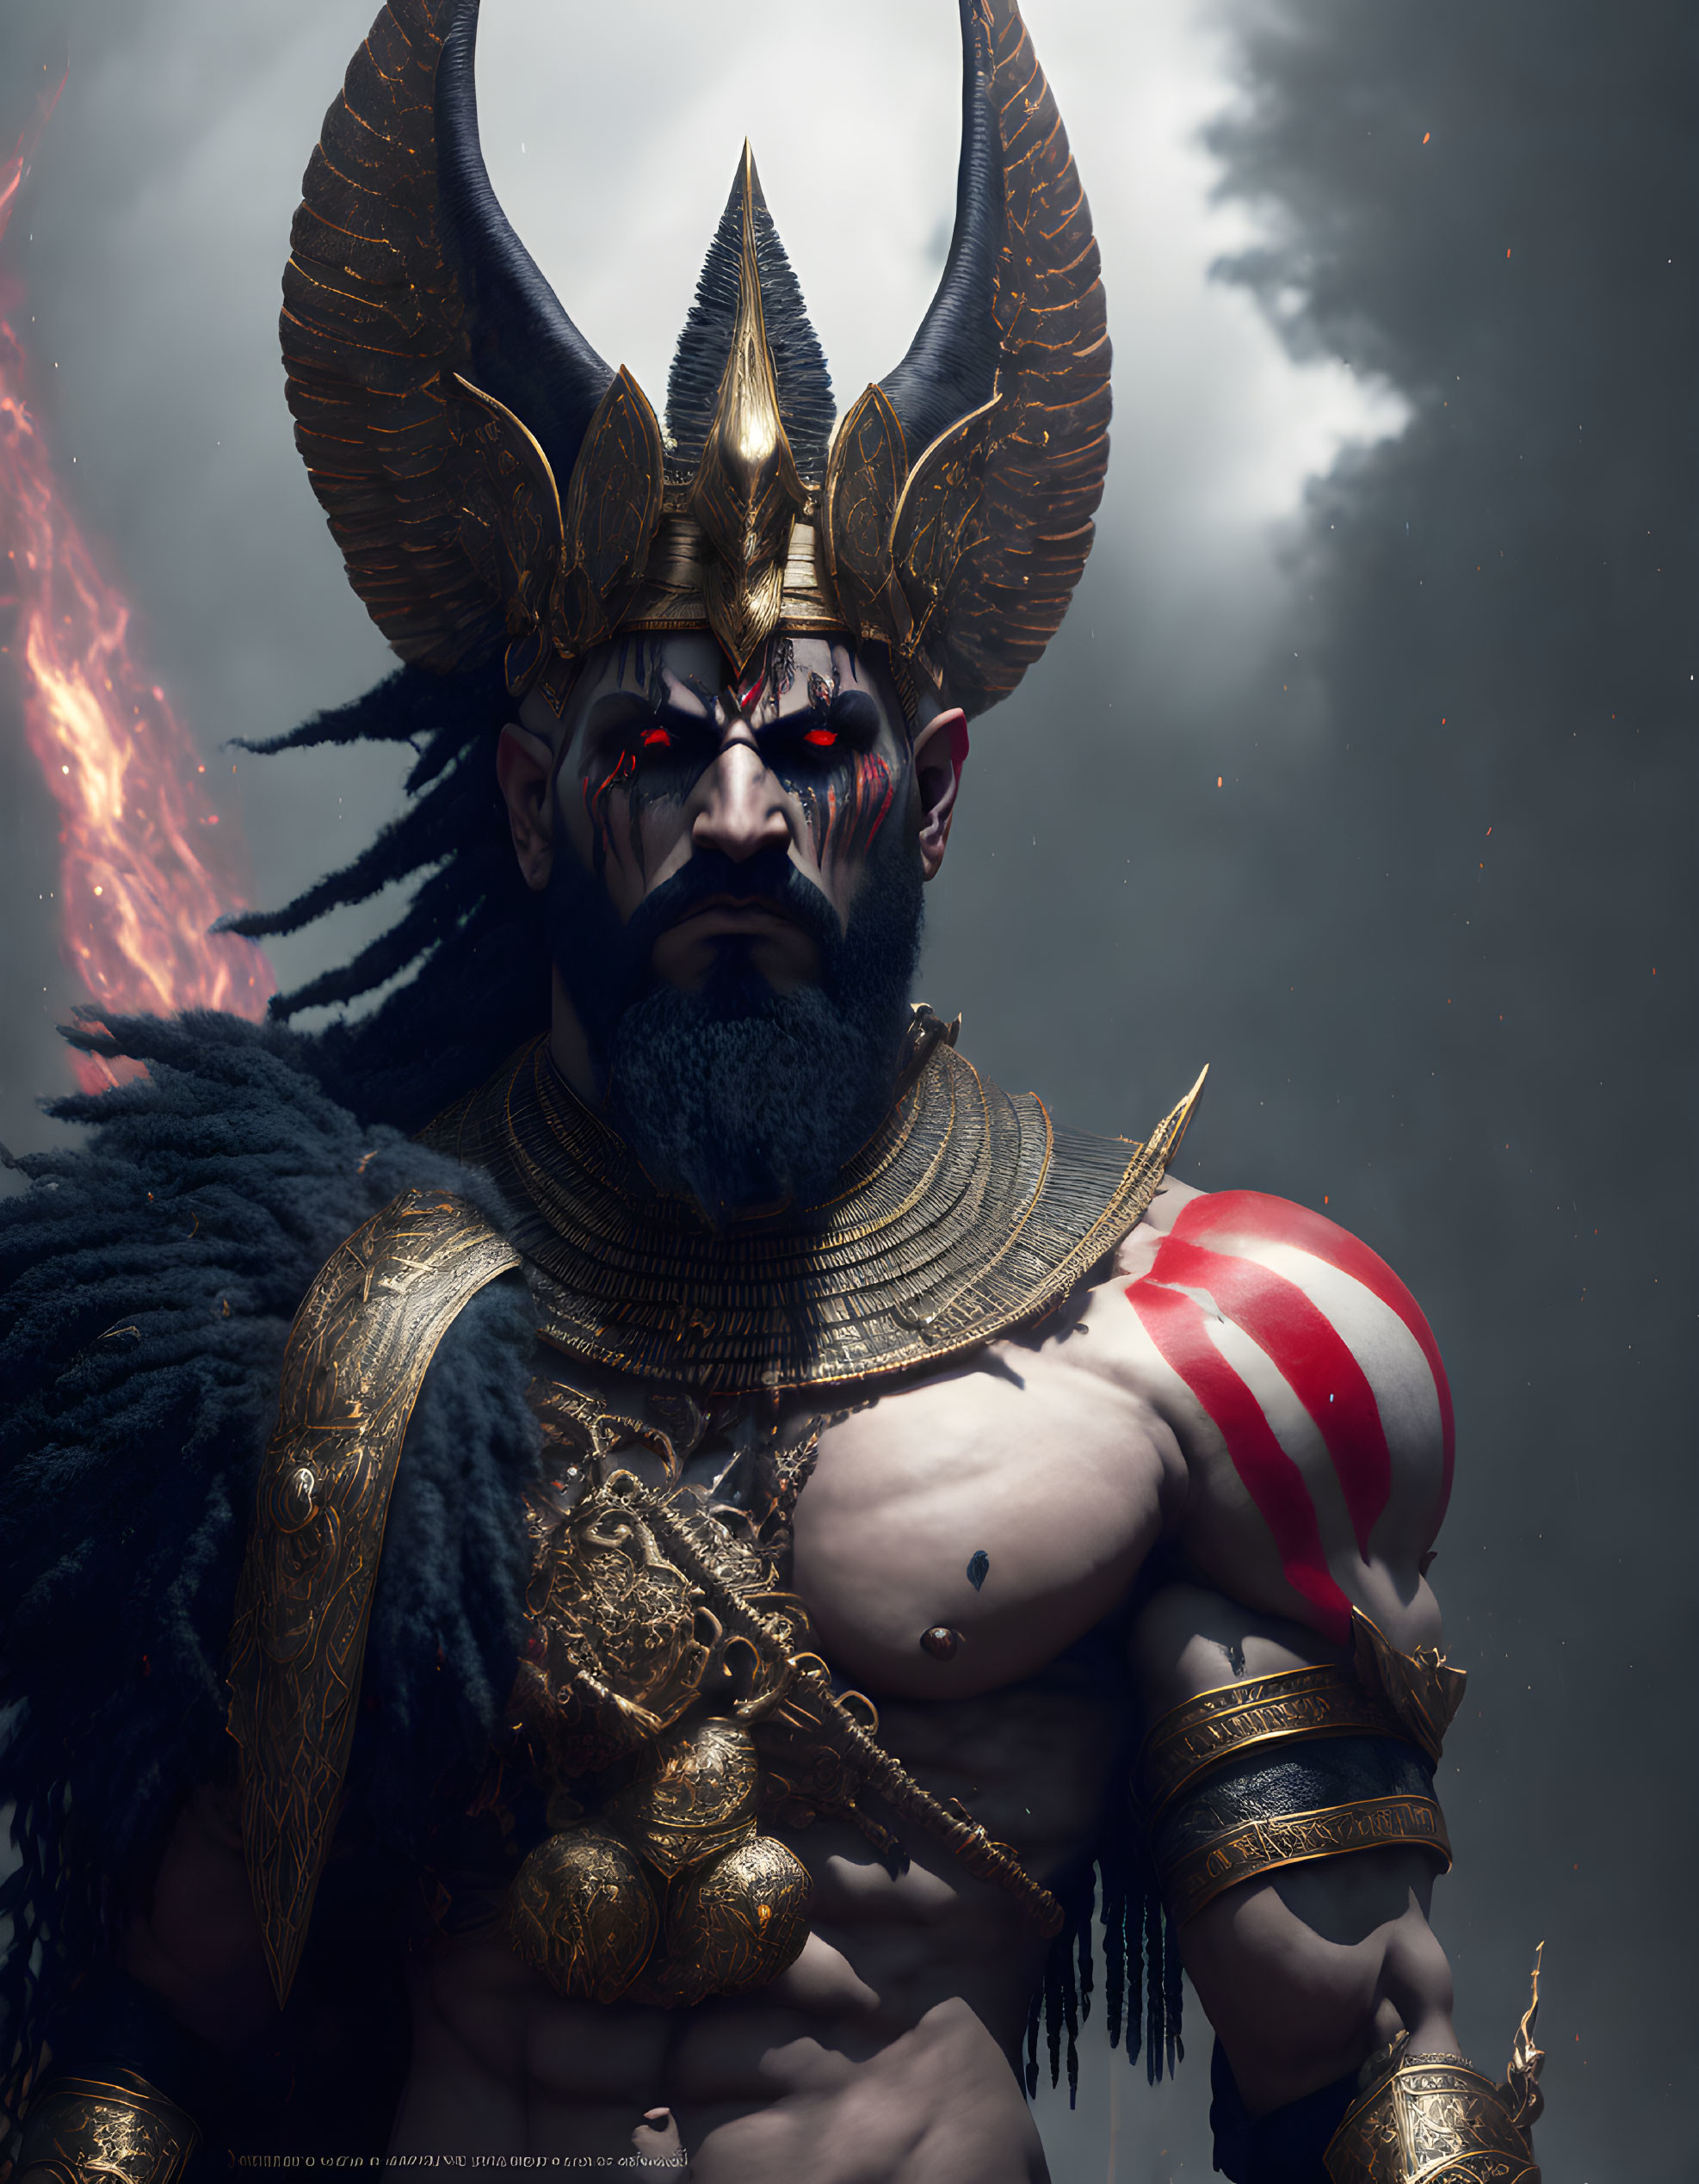 Mythological warrior digital artwork with horned helmet, red eyes, golden armor, and cape